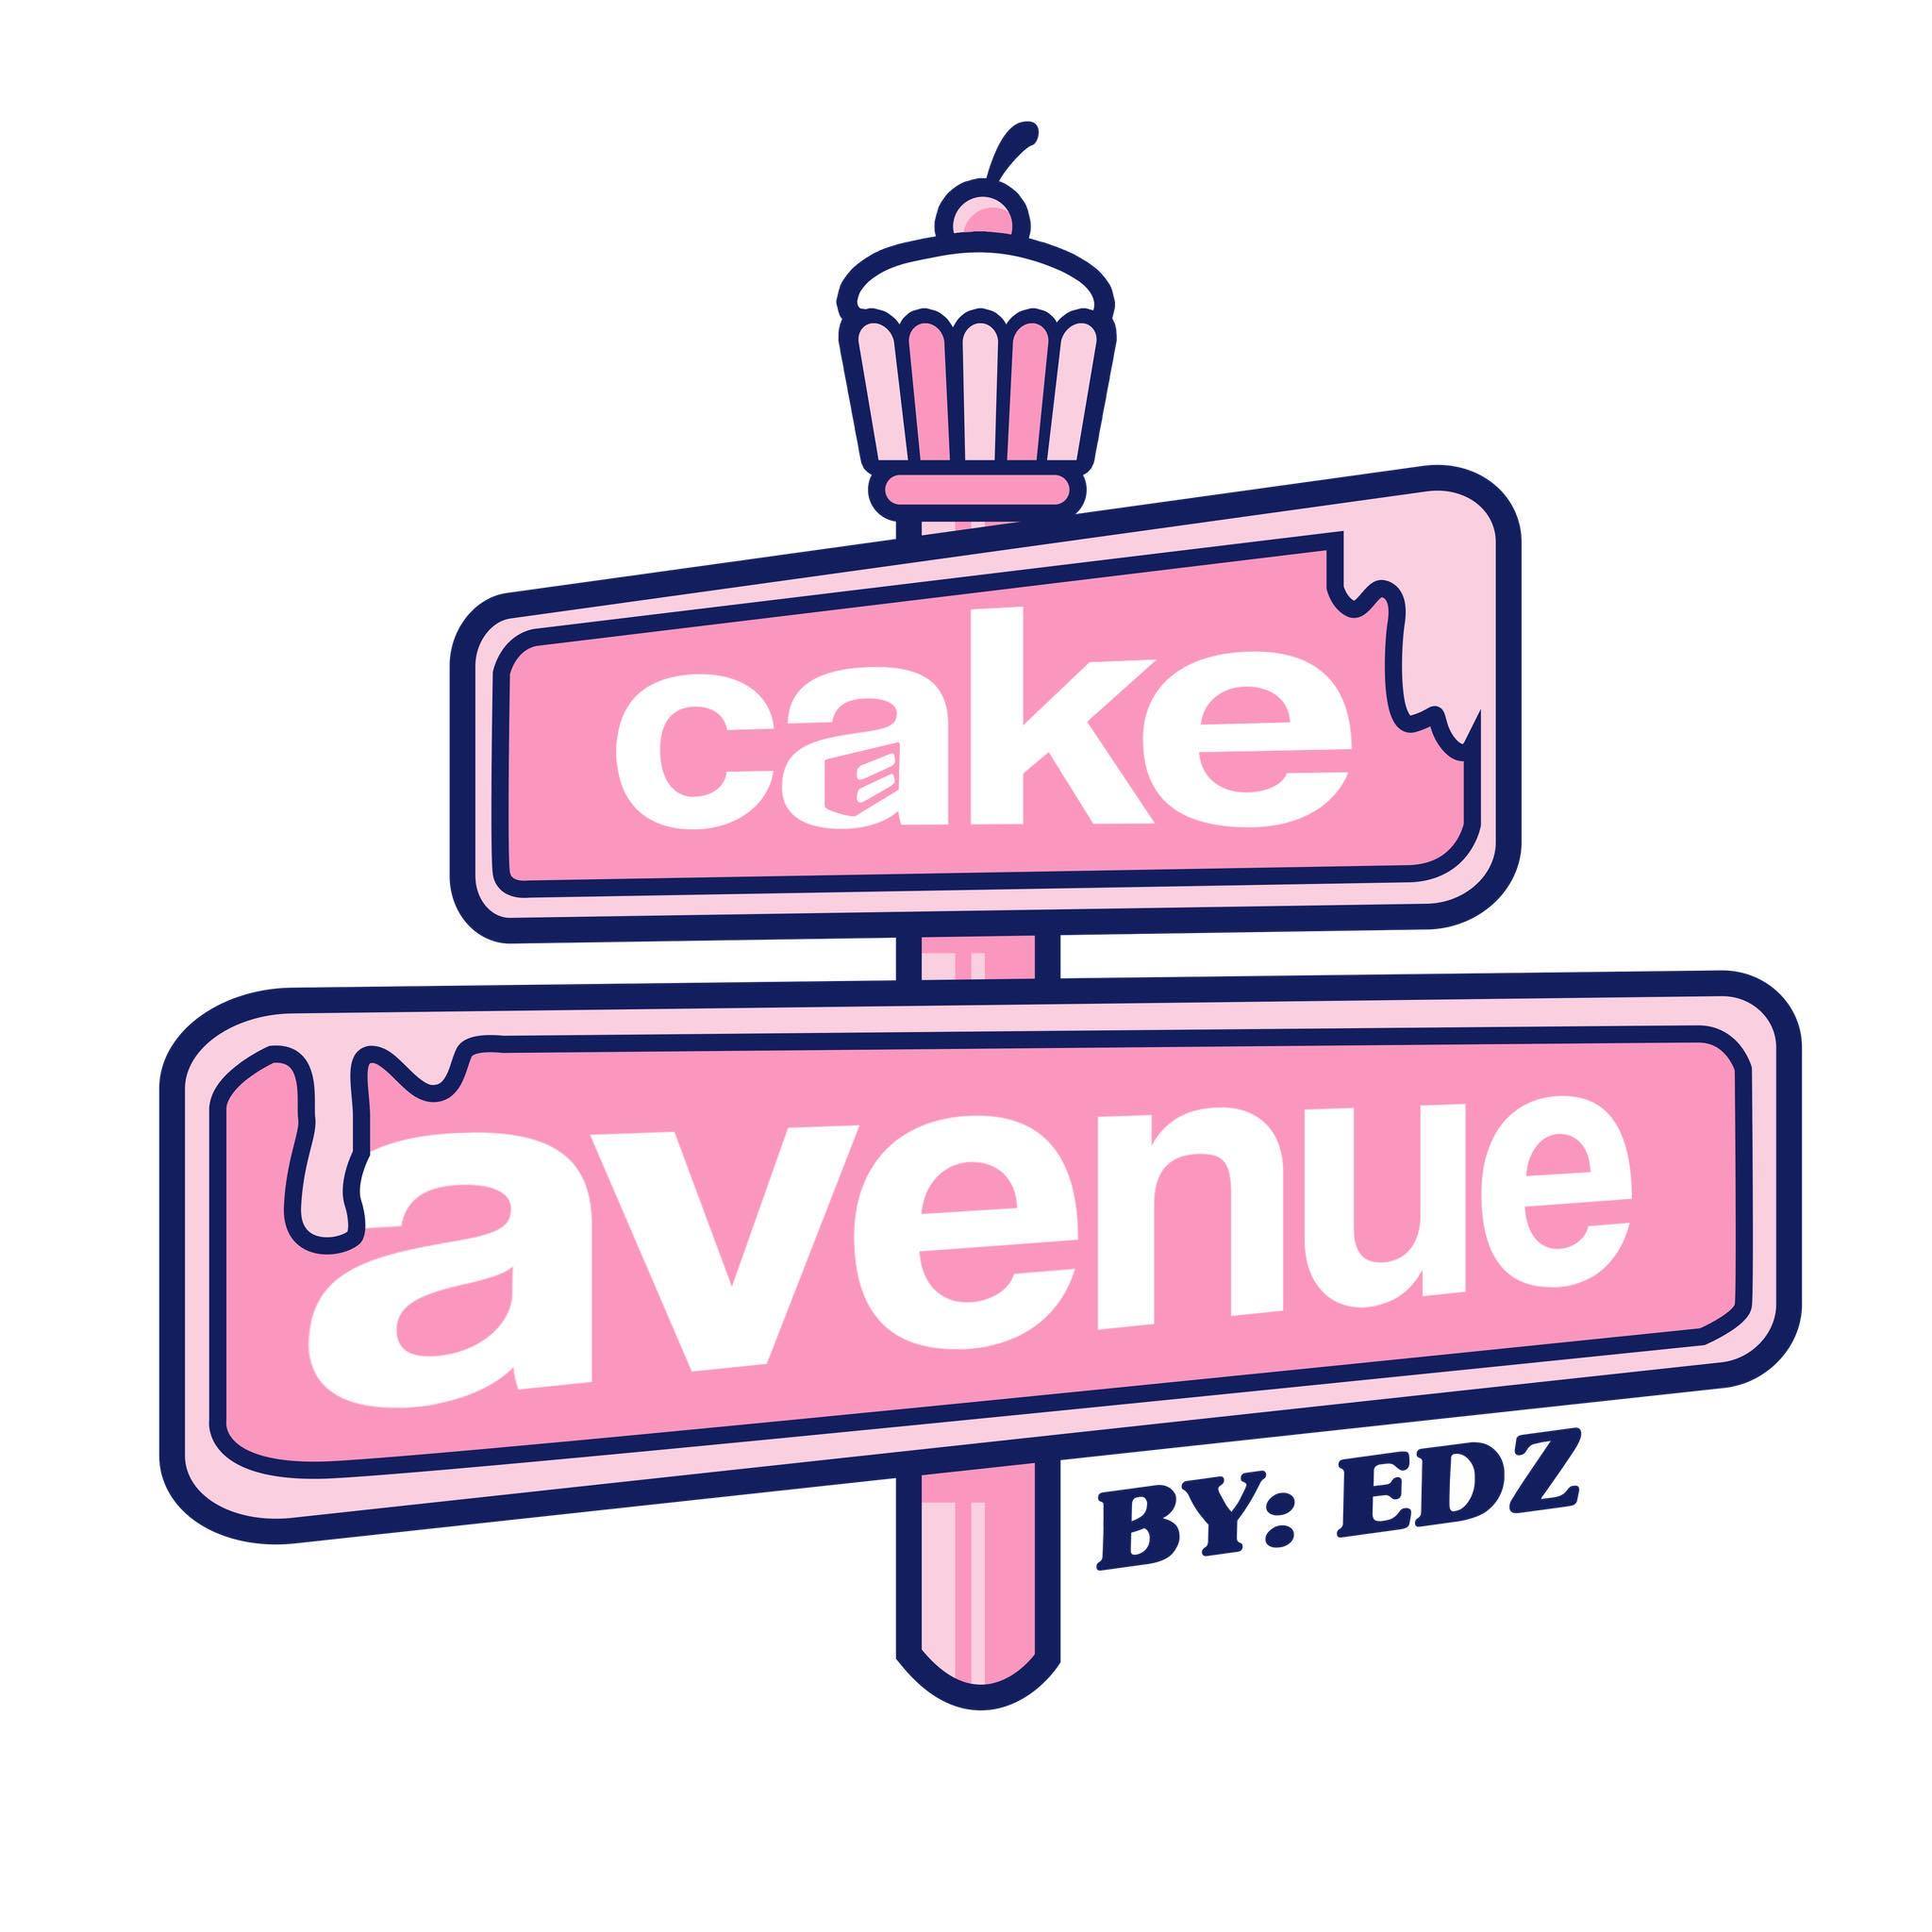 cakeavenue by edz logo